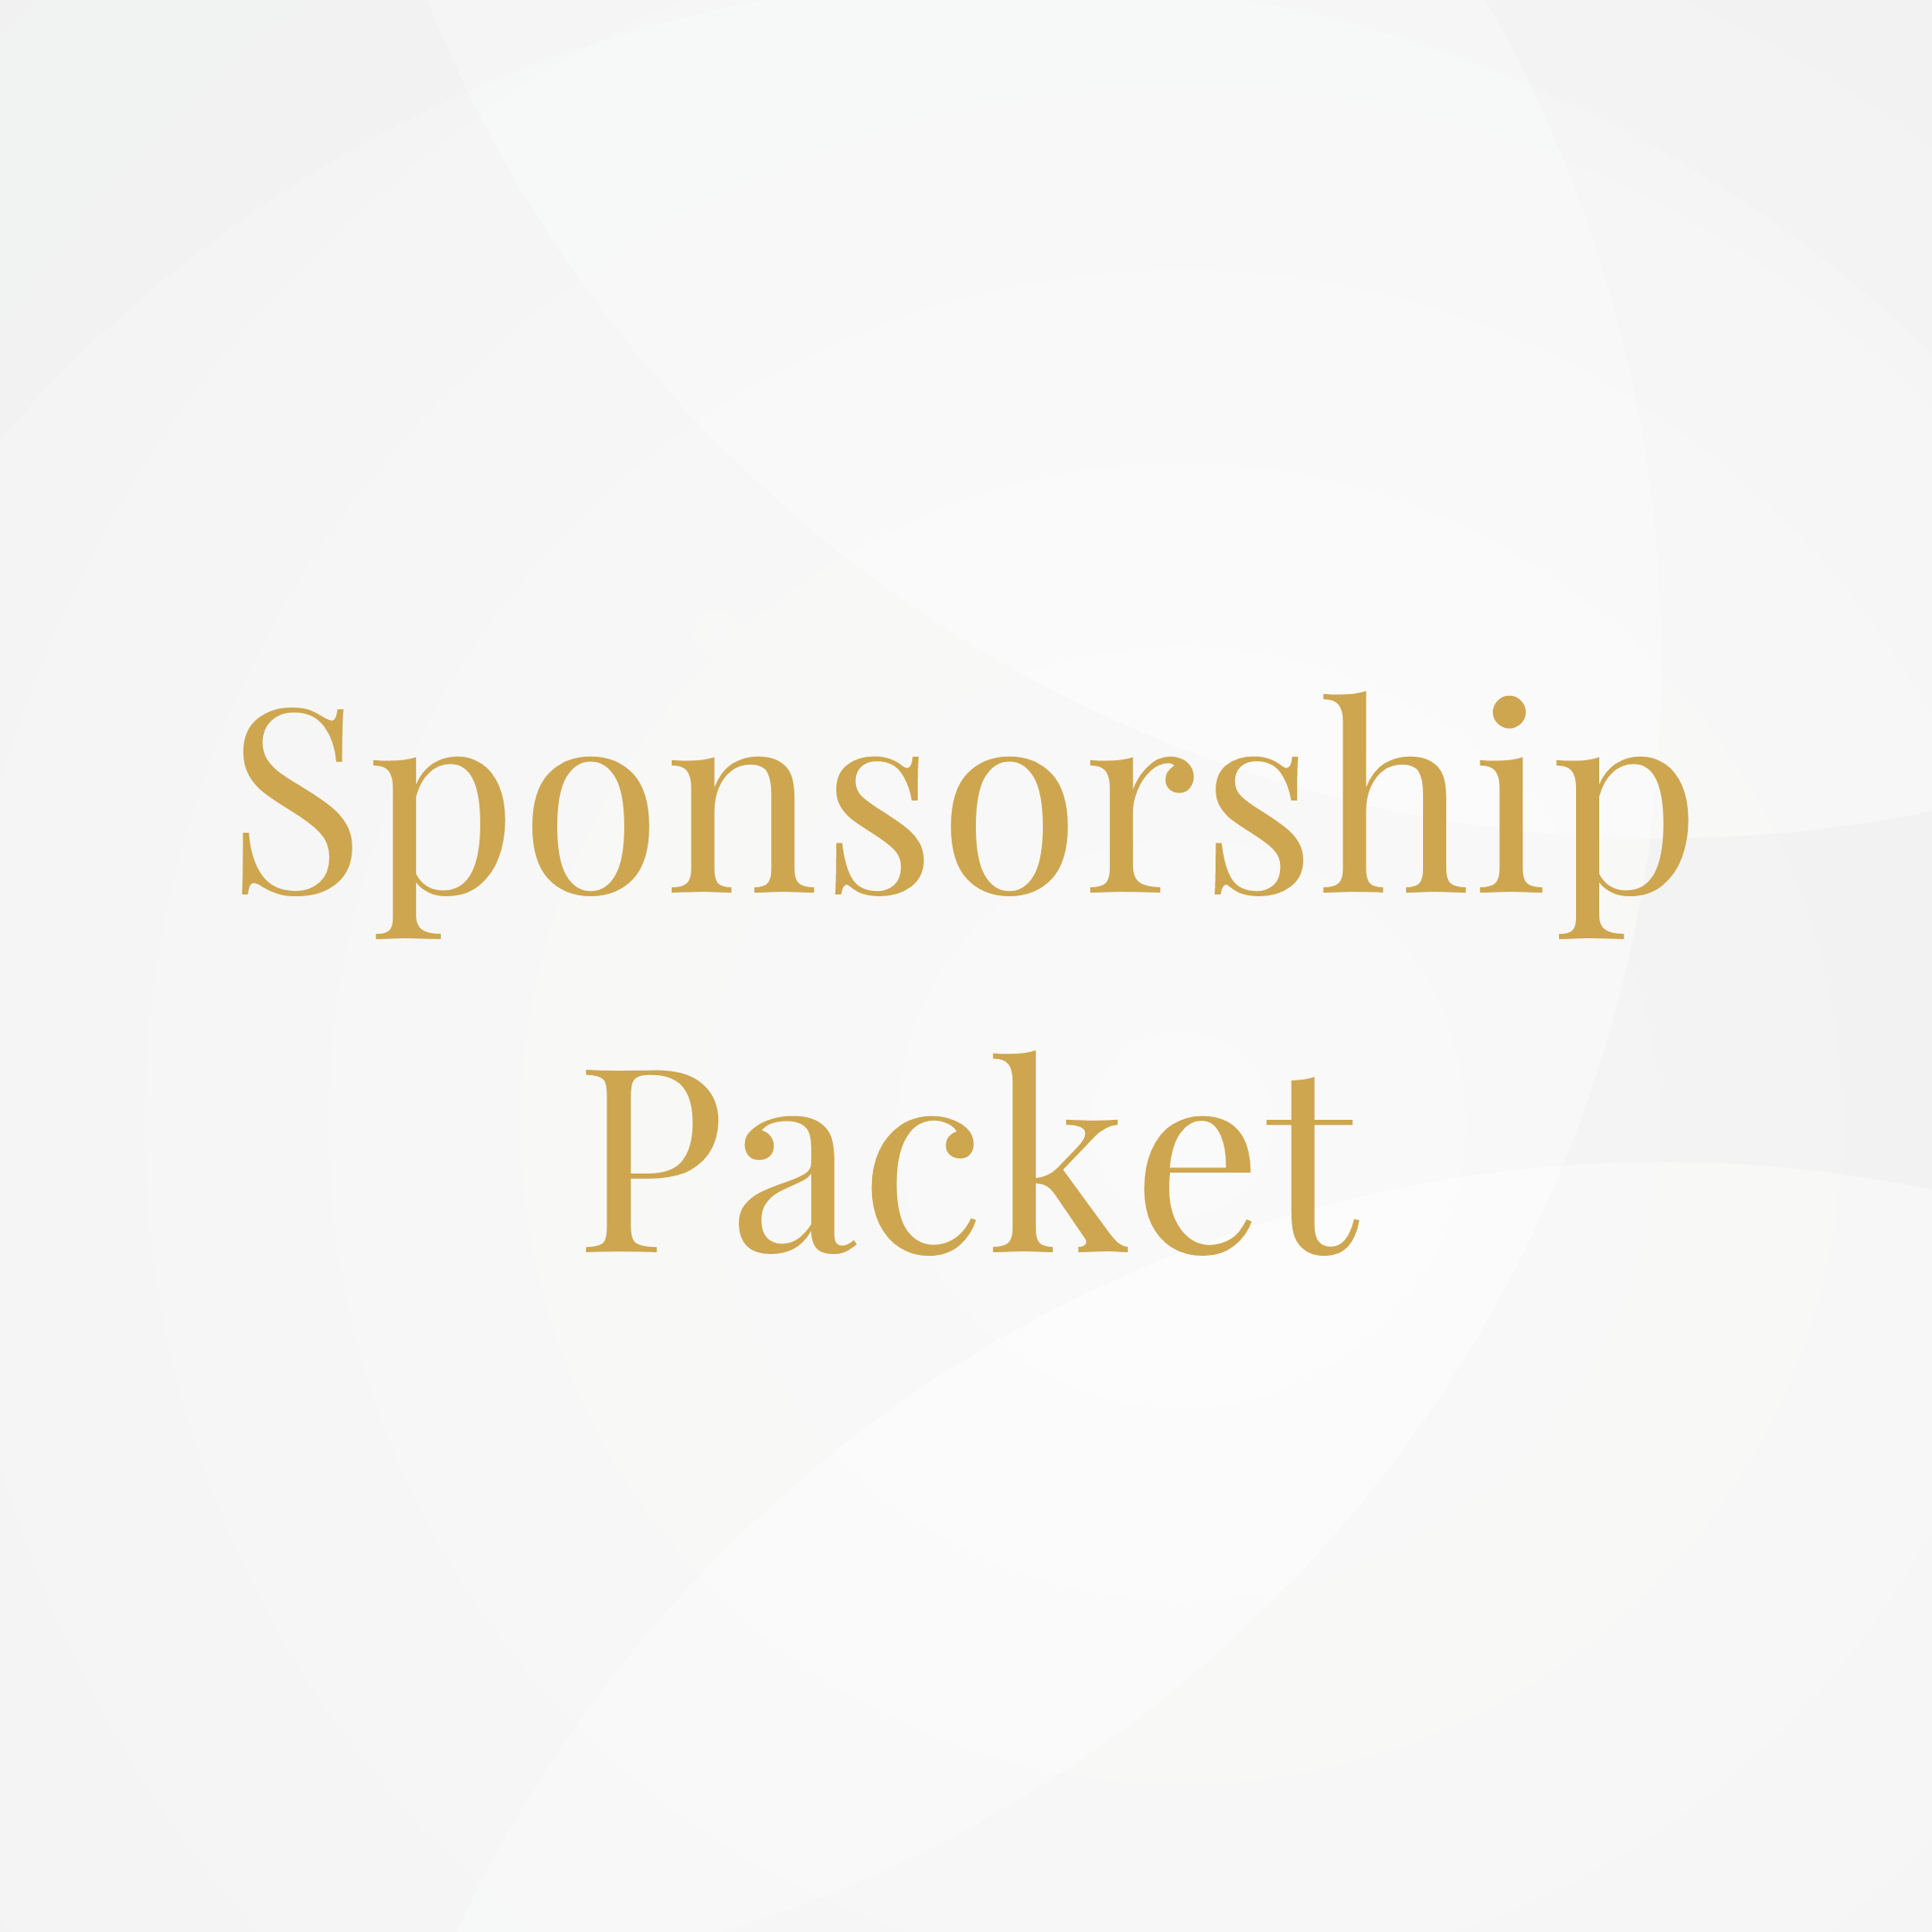 Sponsorship Packet